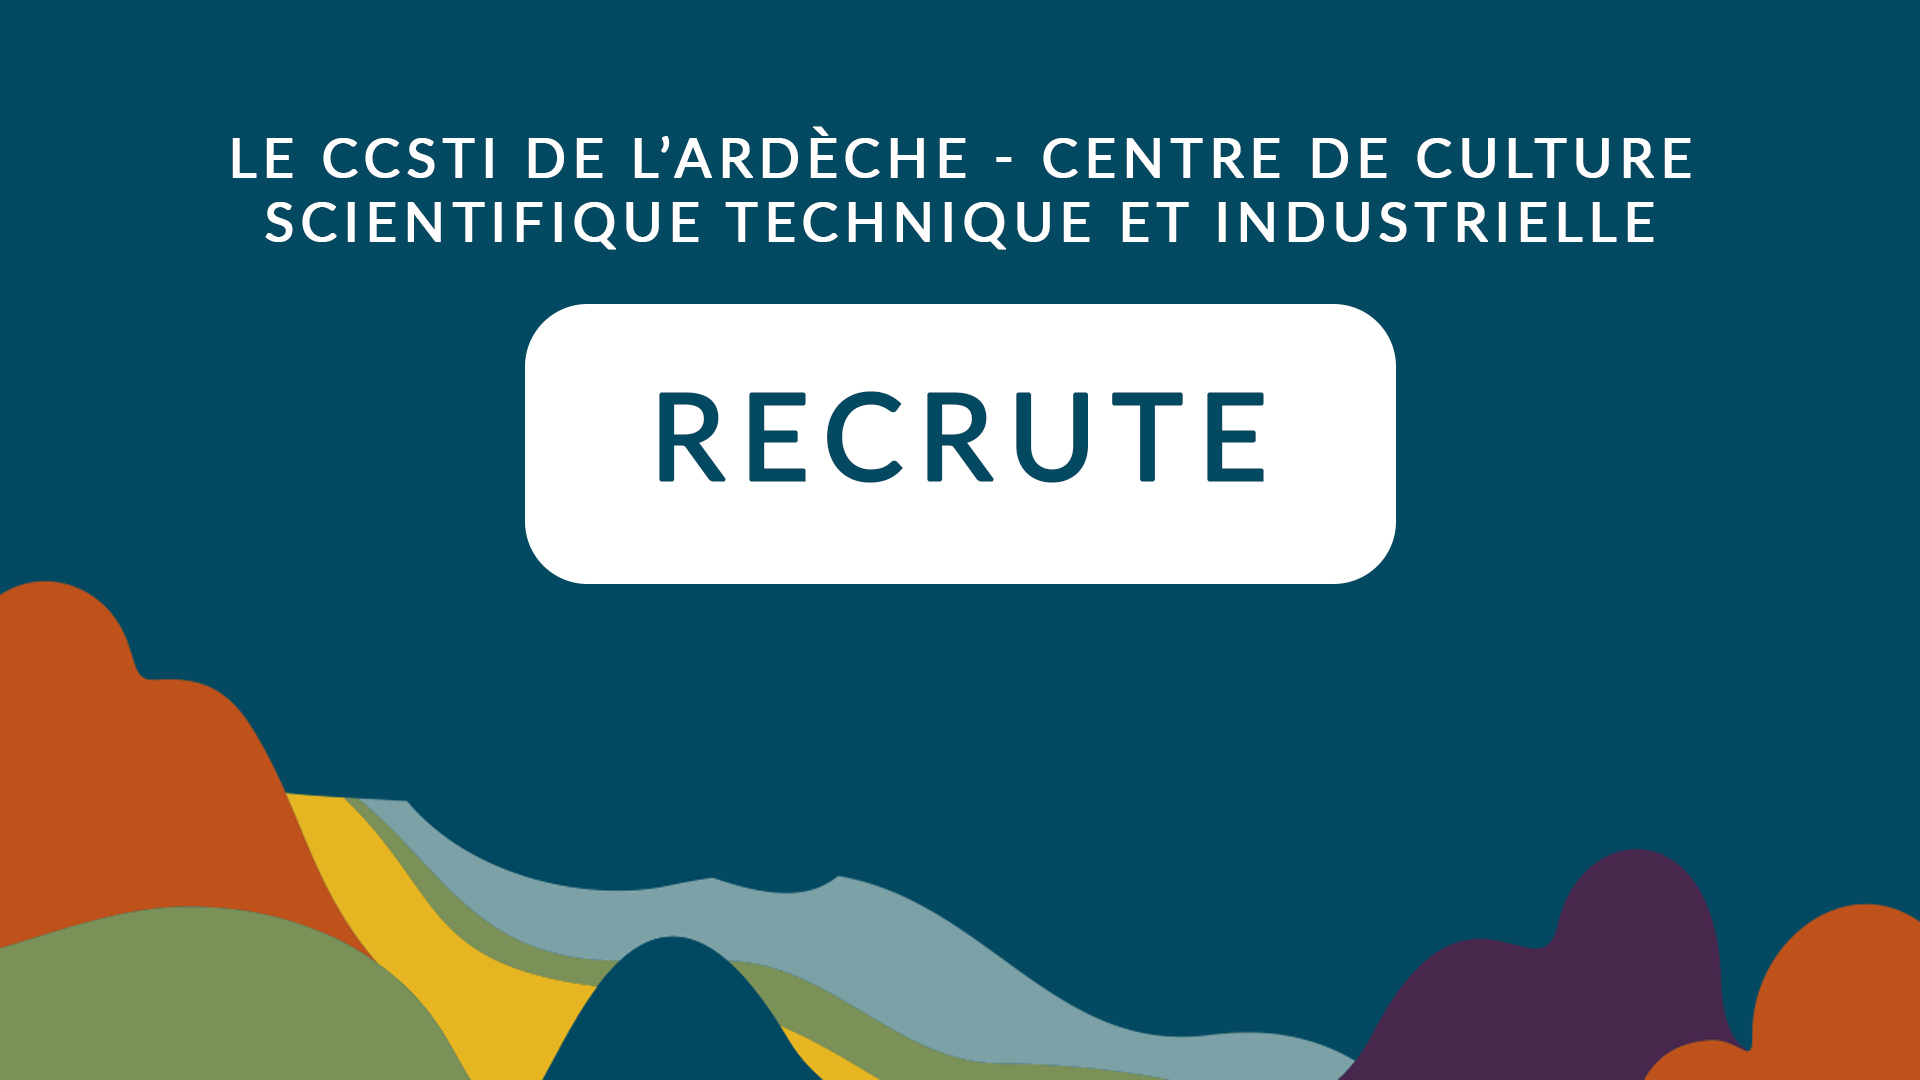 Le CCSTI de l’Ardèche recrute un(e) médiateur(rice) scientifique